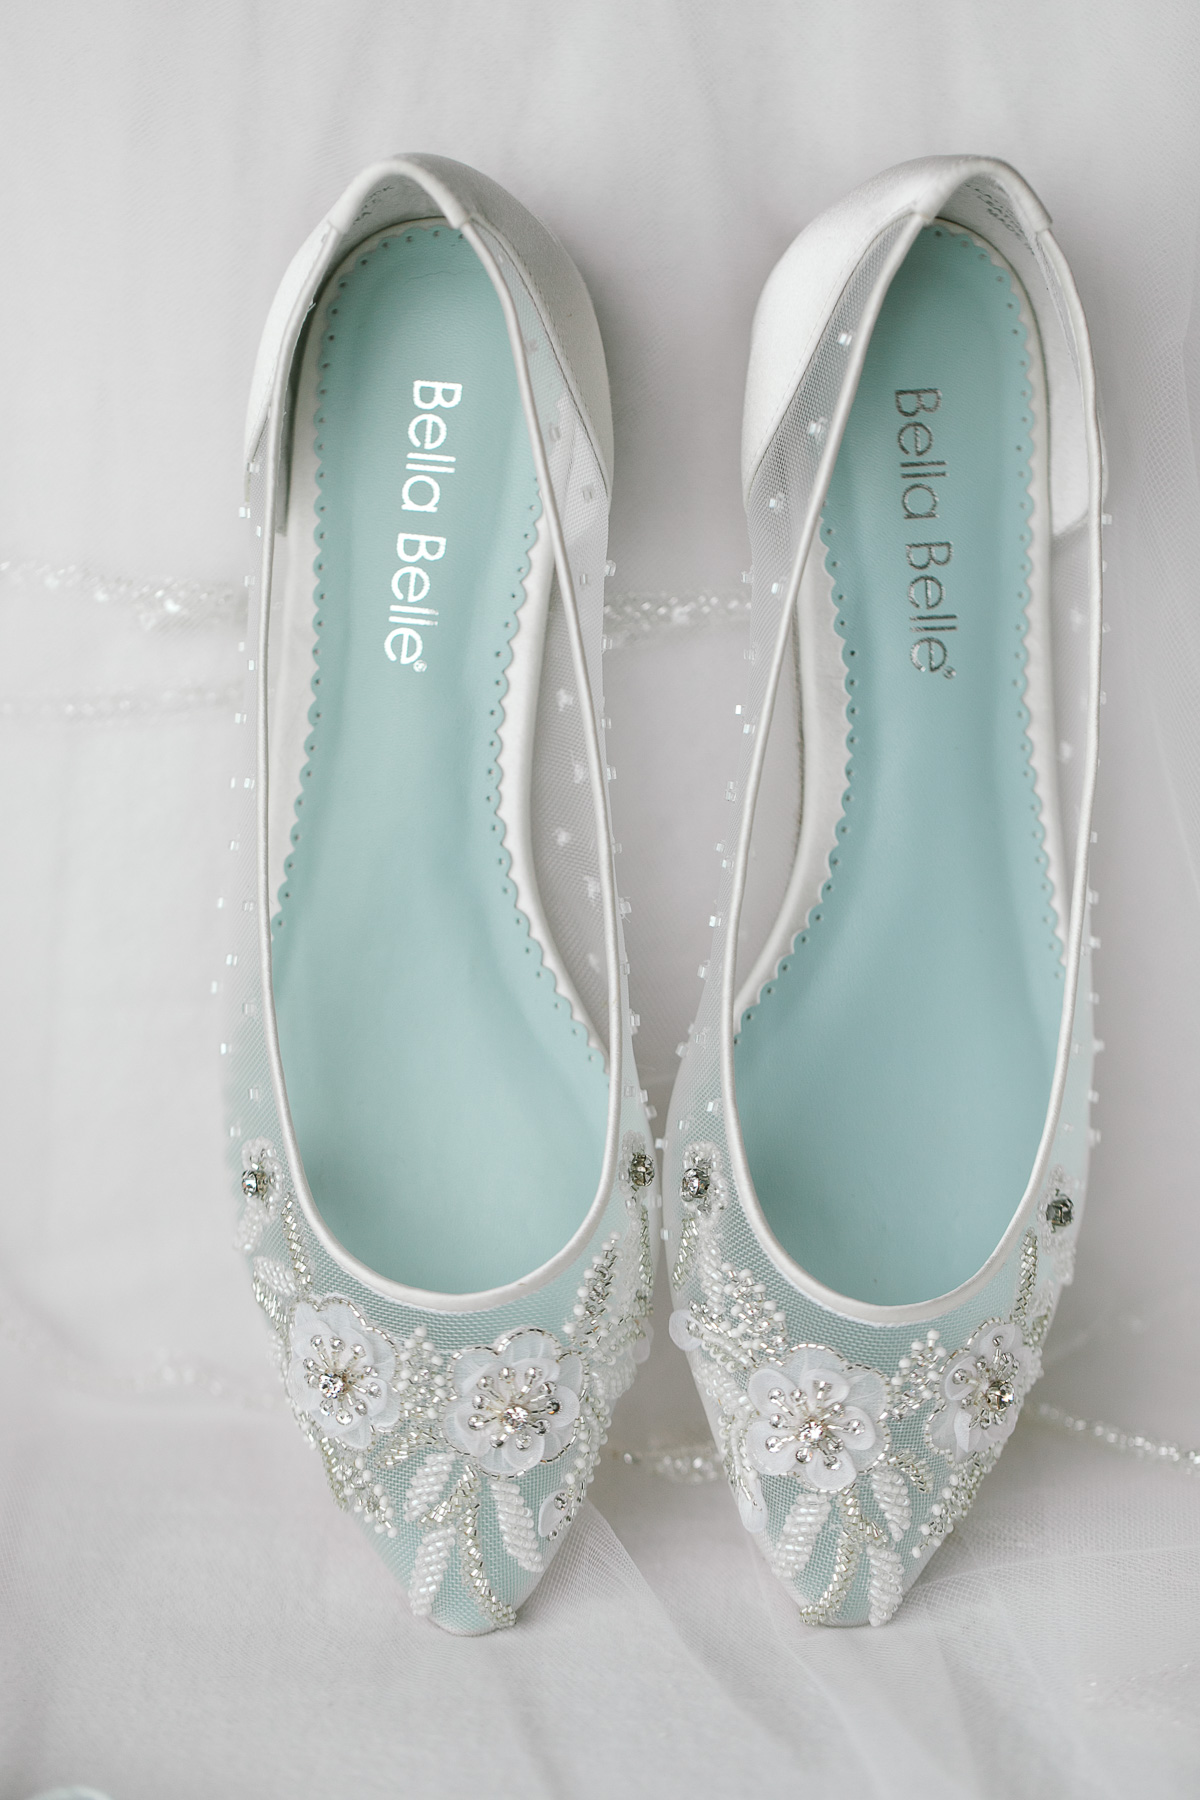 Embellished wedding shoes from Bella Belle